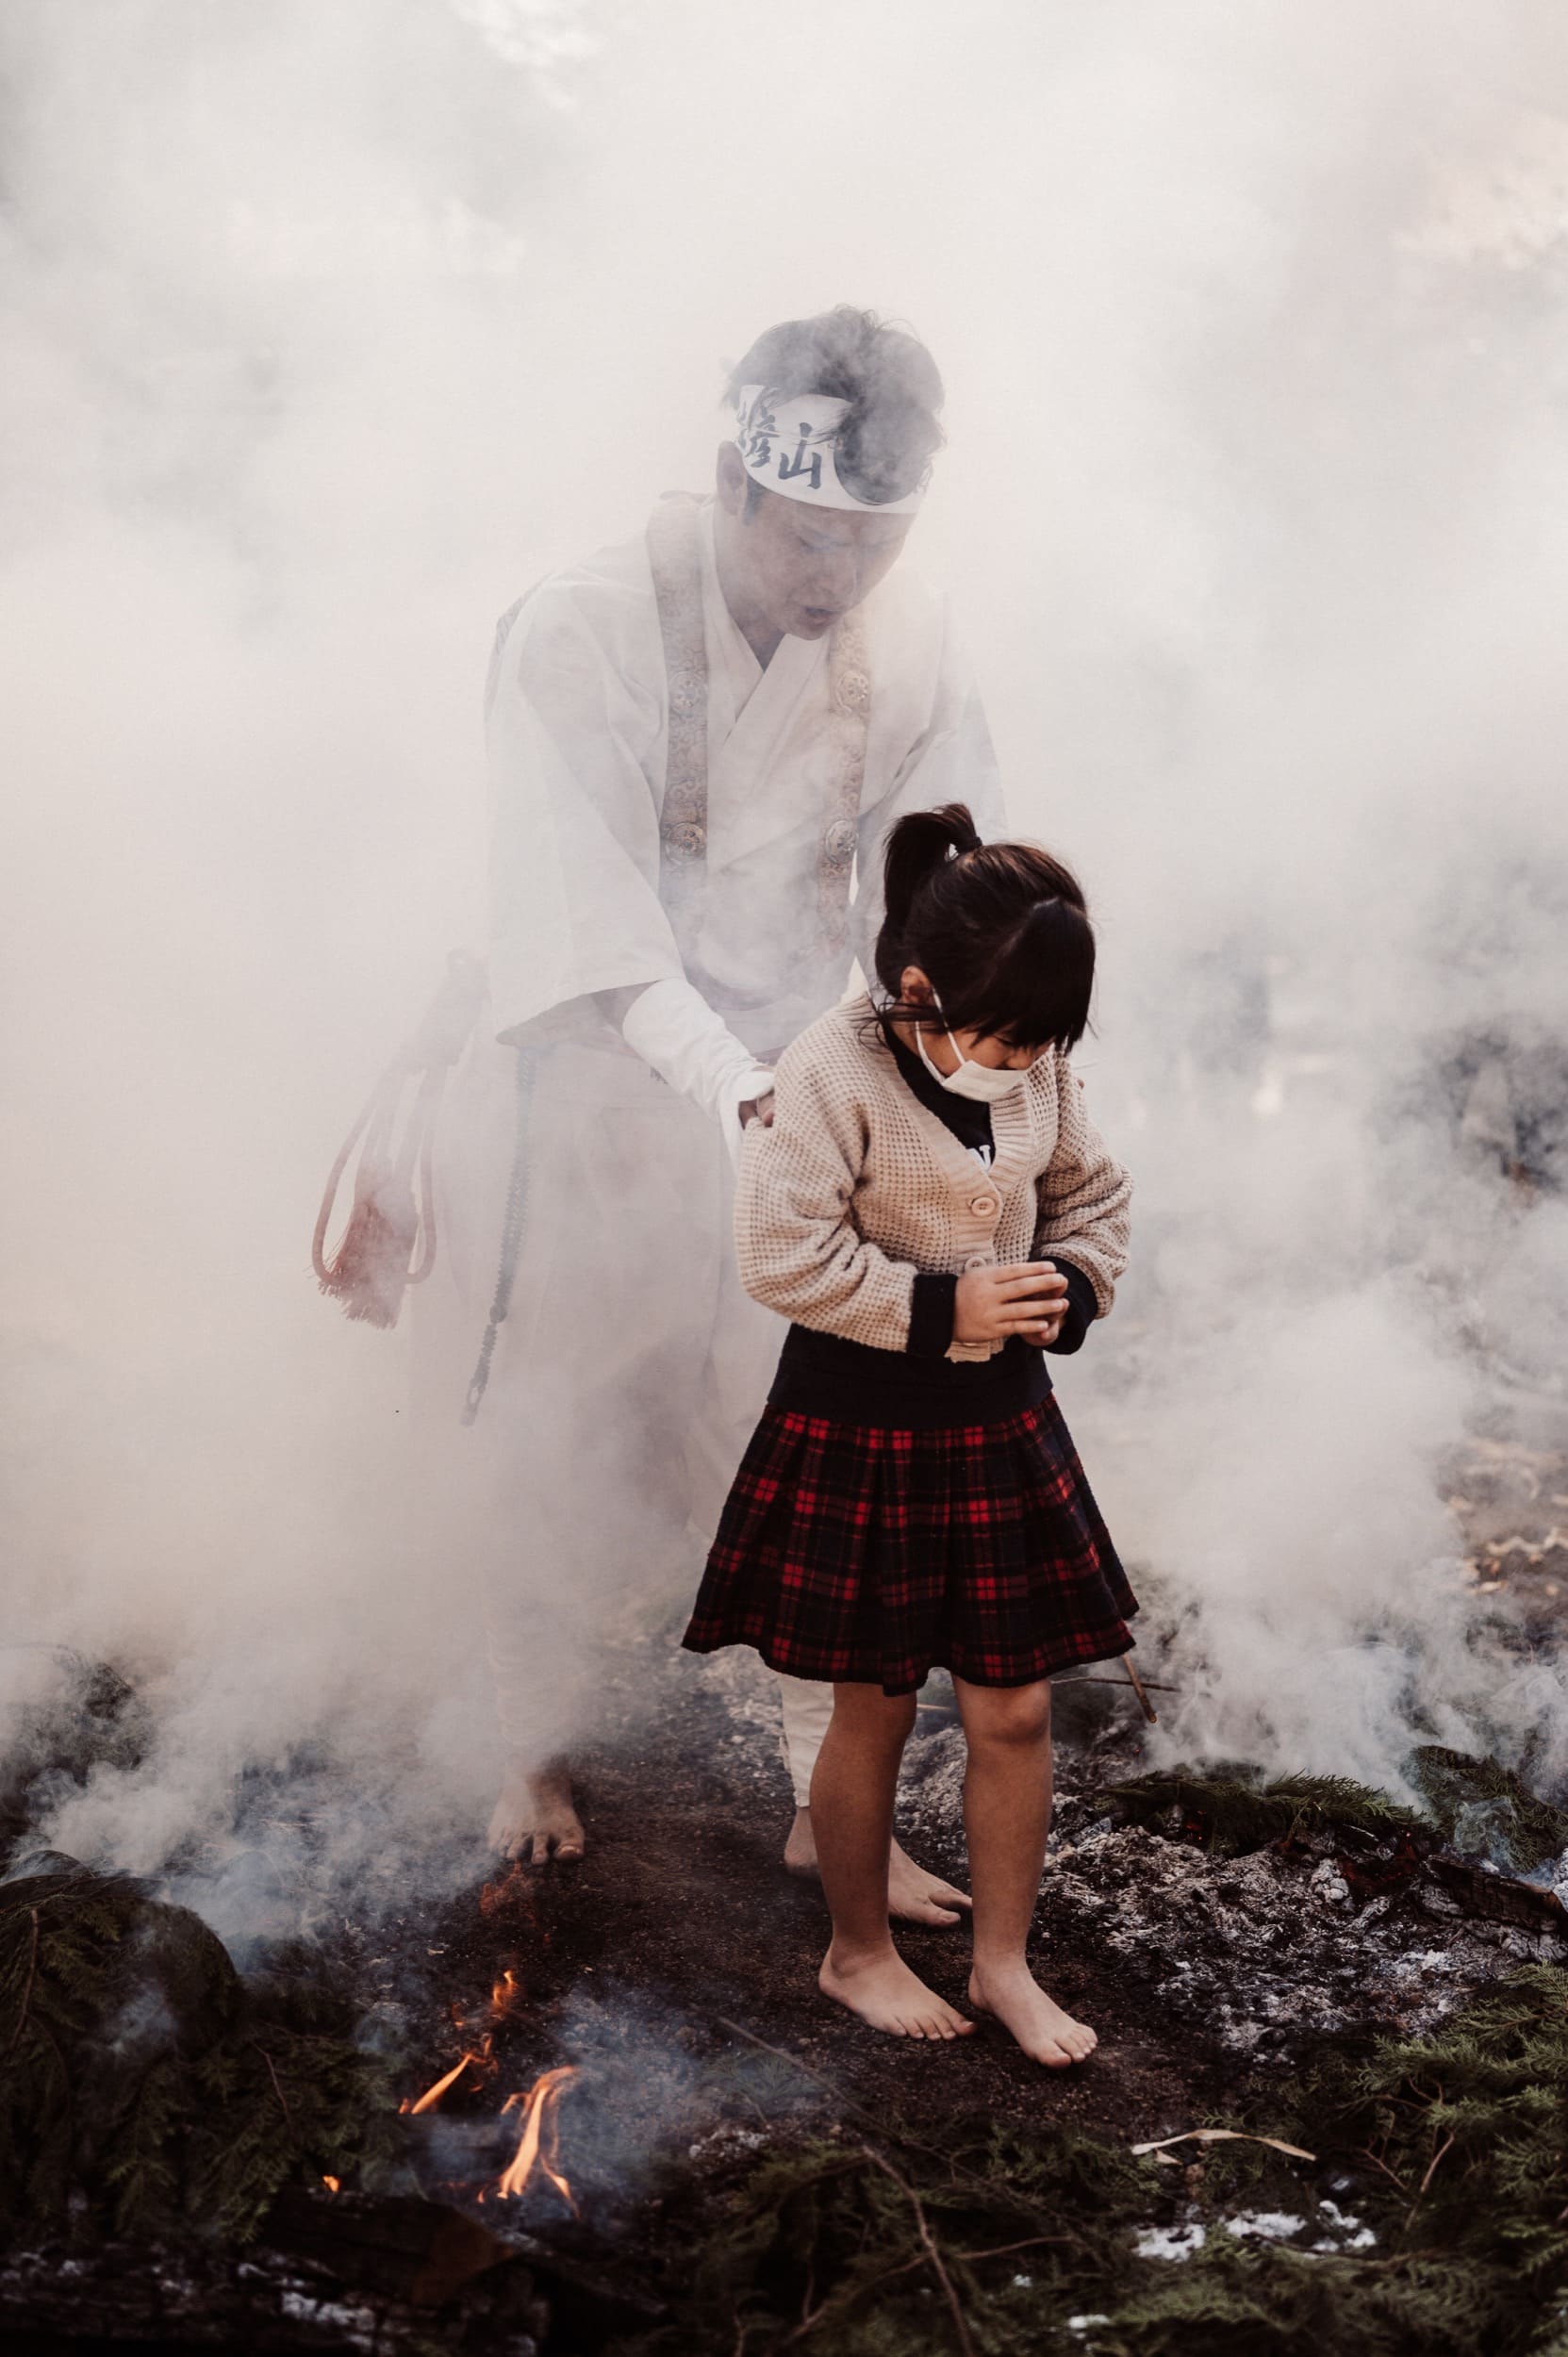 monk escorts little girl through fire